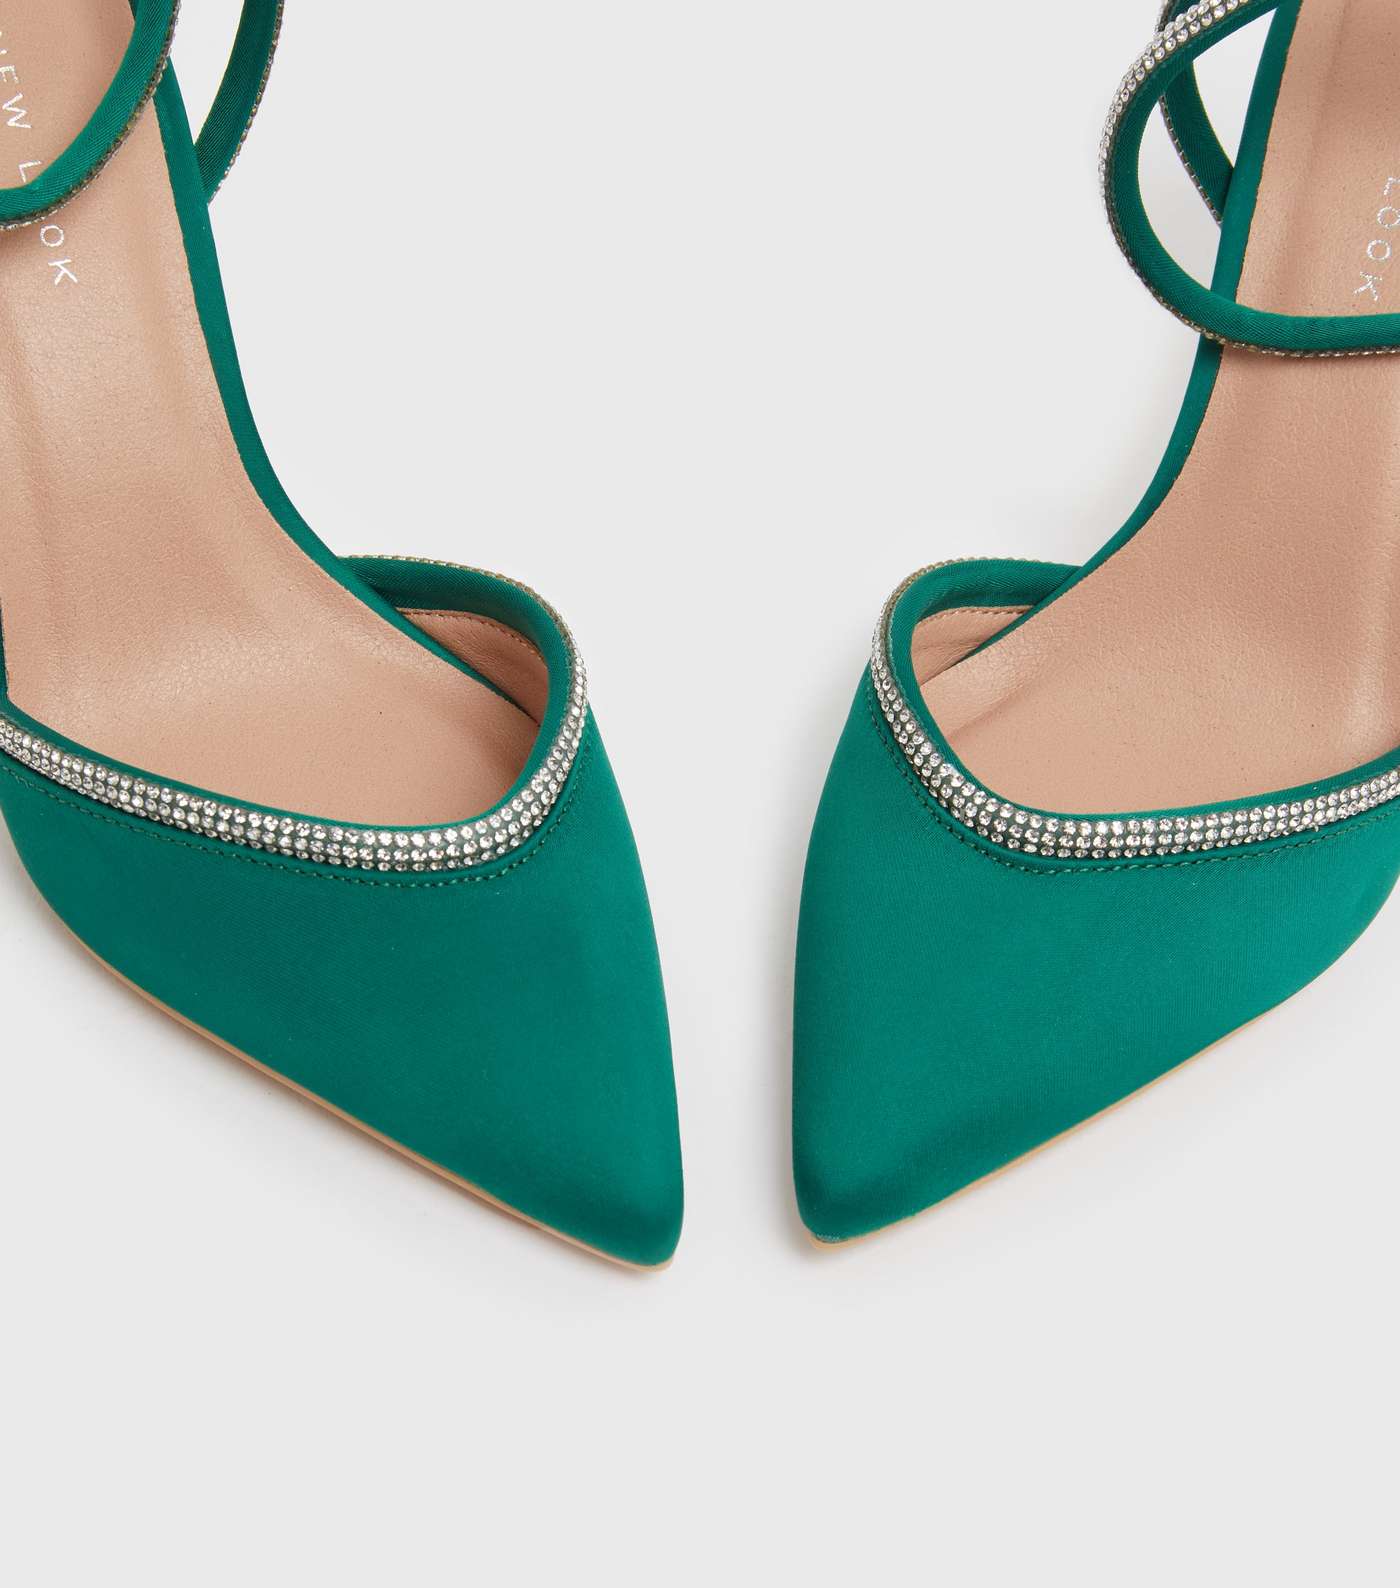 Dark Green Satin Diamanté Trim 2 Part Stiletto Heel Sandals Image 4